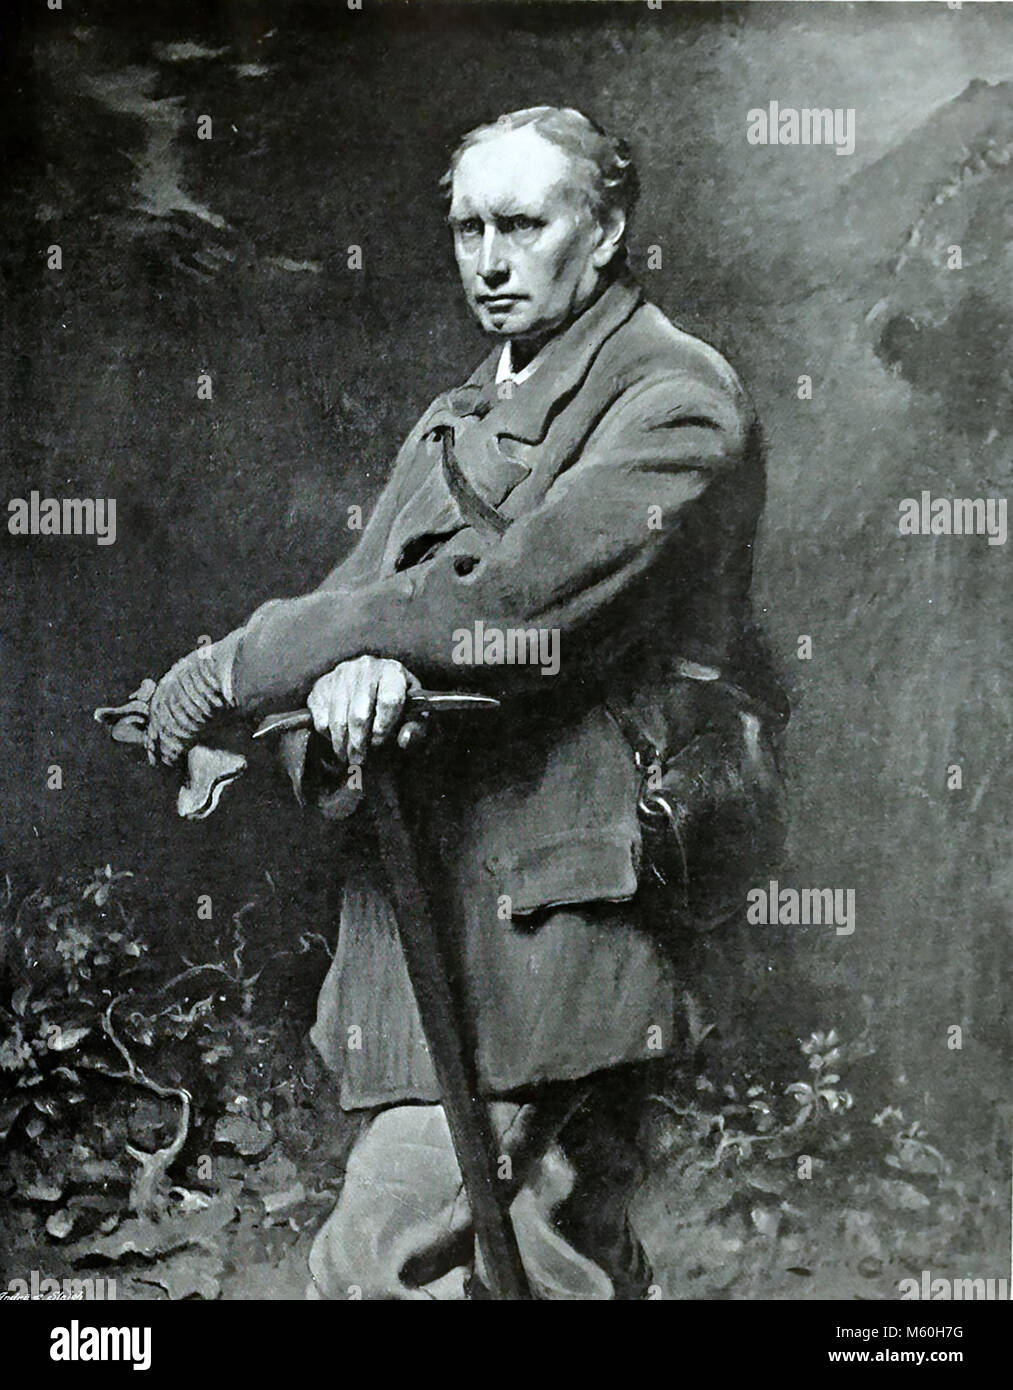 EDWARD WHYMPER (1840-1911) englischer Schriftsteller und Bergsteiger, der die erste Besteigung des Matterhorns im Jahr 1865. Malerei von Lance Stollen 1884. Stockfoto